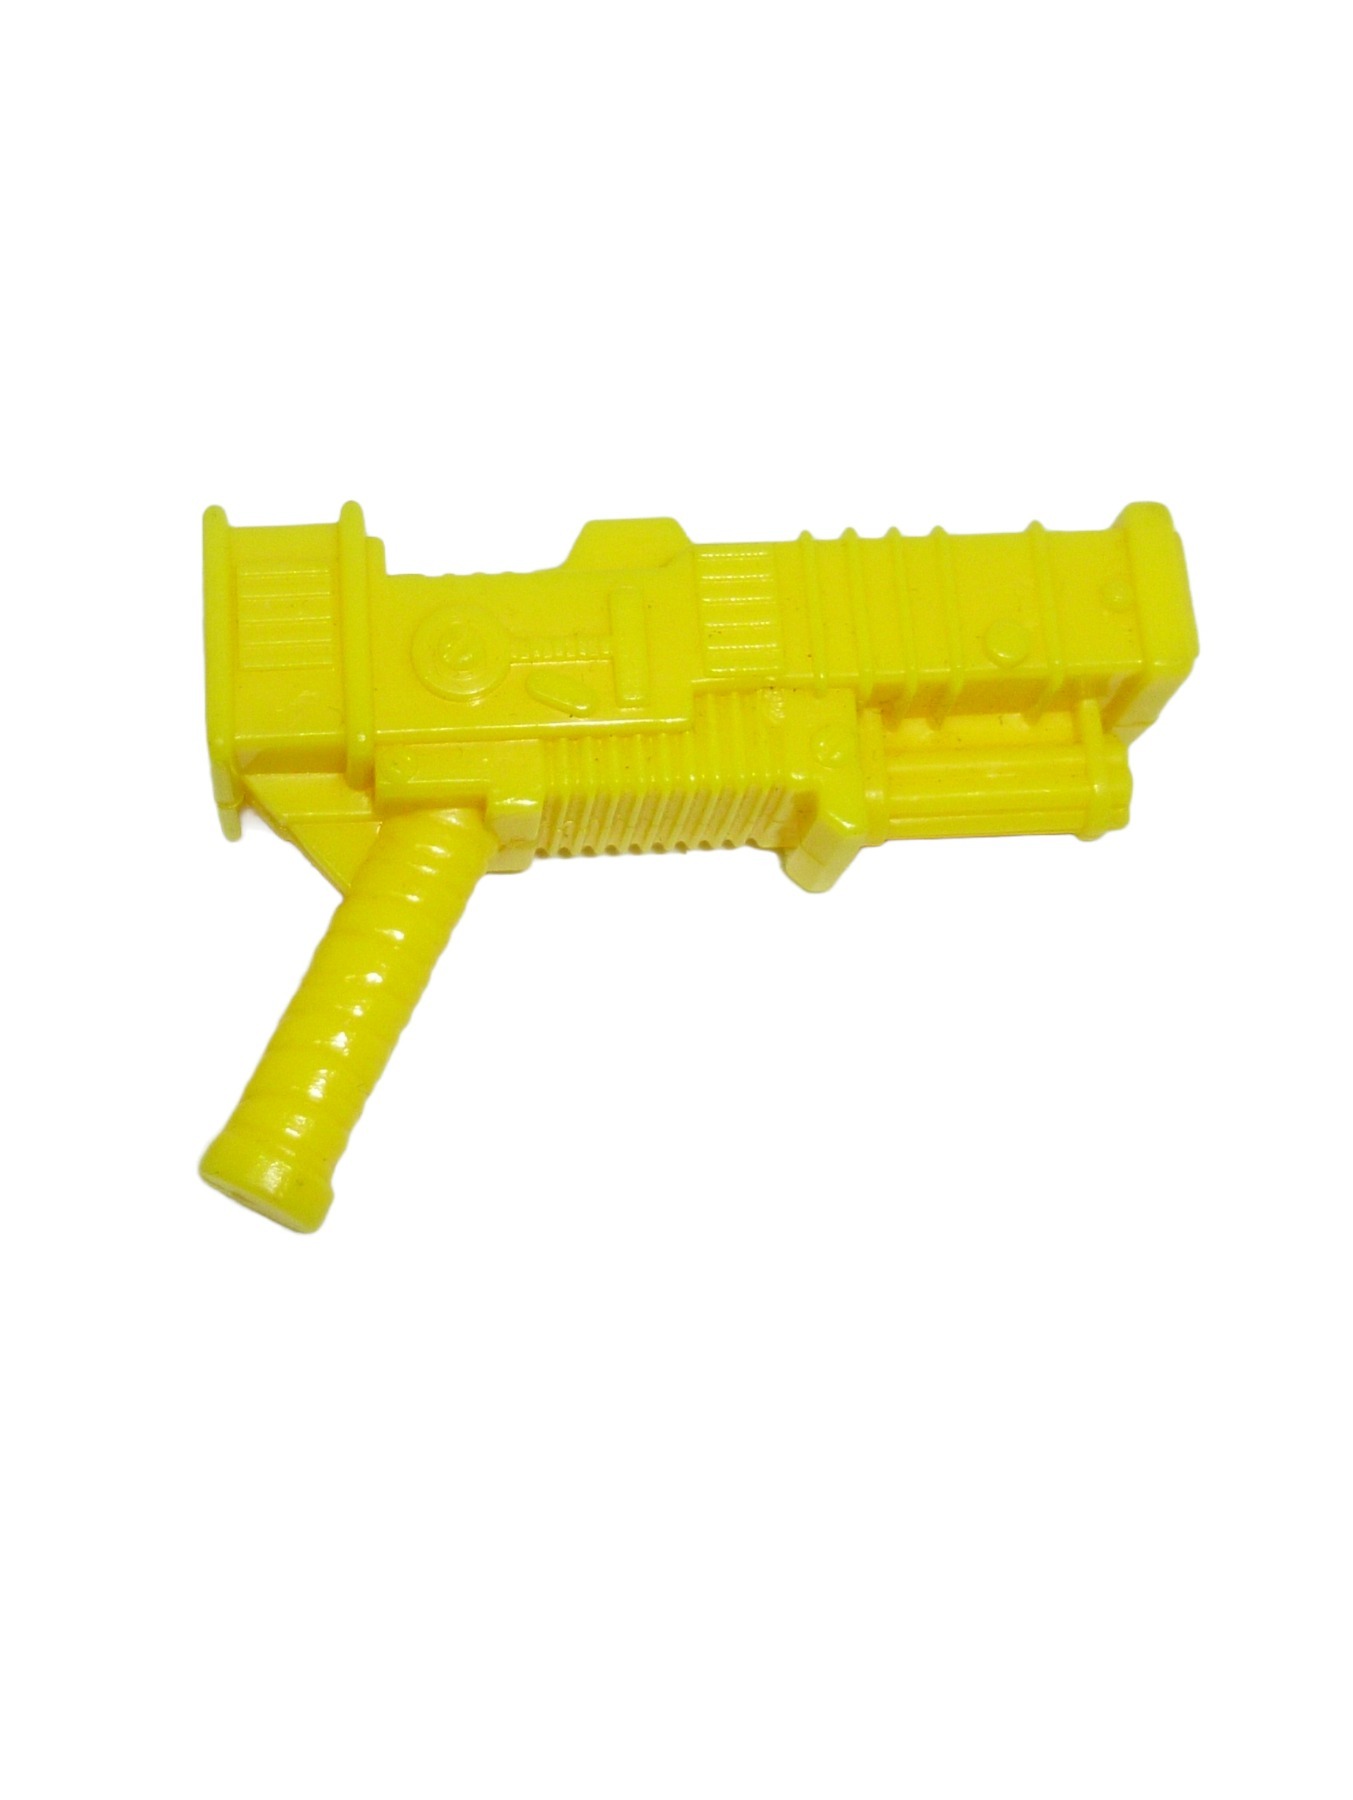 General Troll gelbe Waffe / Blaster